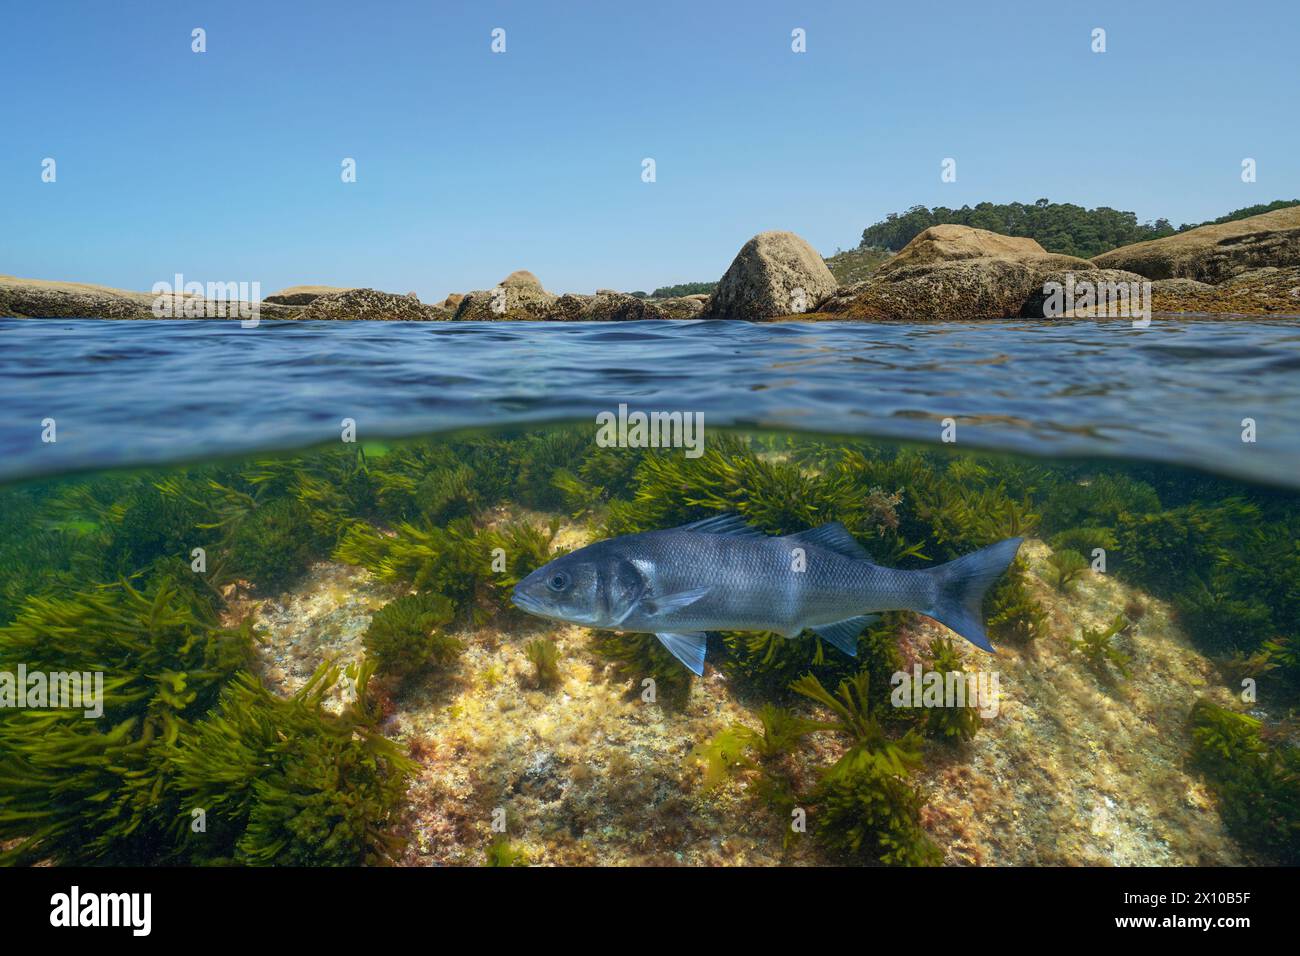 Un poisson de bar sous l'eau dans l'océan (Dicentrarchus labrax) près de la rive rocheuse, vue divisée sur et sous la surface de l'eau, Atlantique est, Espagne Banque D'Images